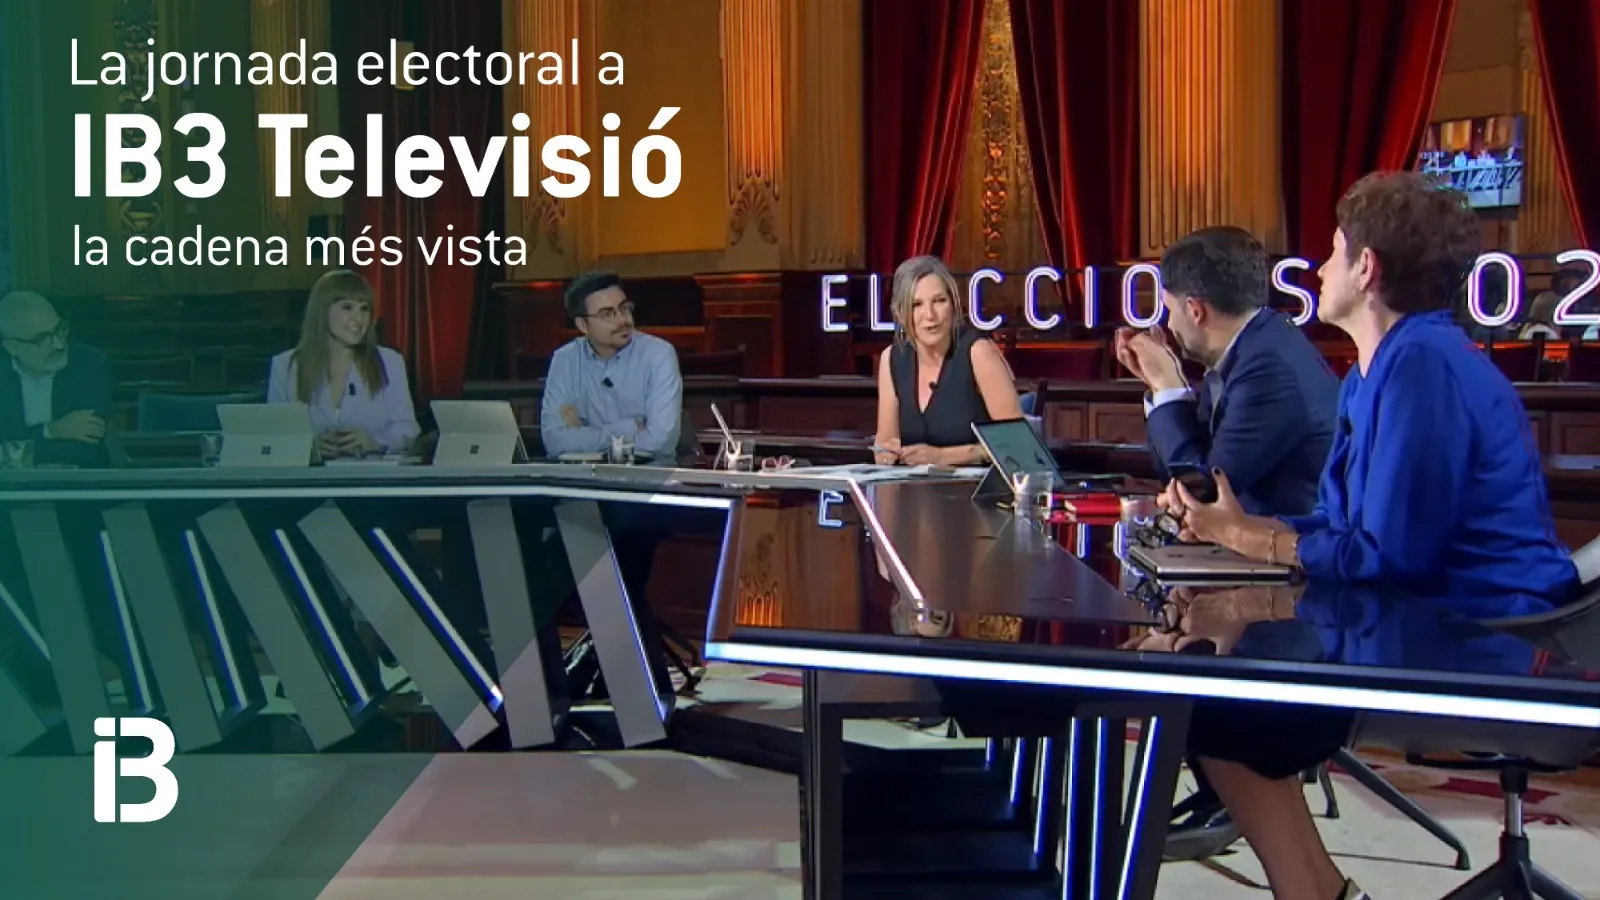 IB3+Televisi%C3%B3%2C+l%C3%ADder+a+Balears+durant+tota+la+jornada+electoral+amb+326.000+espectadors